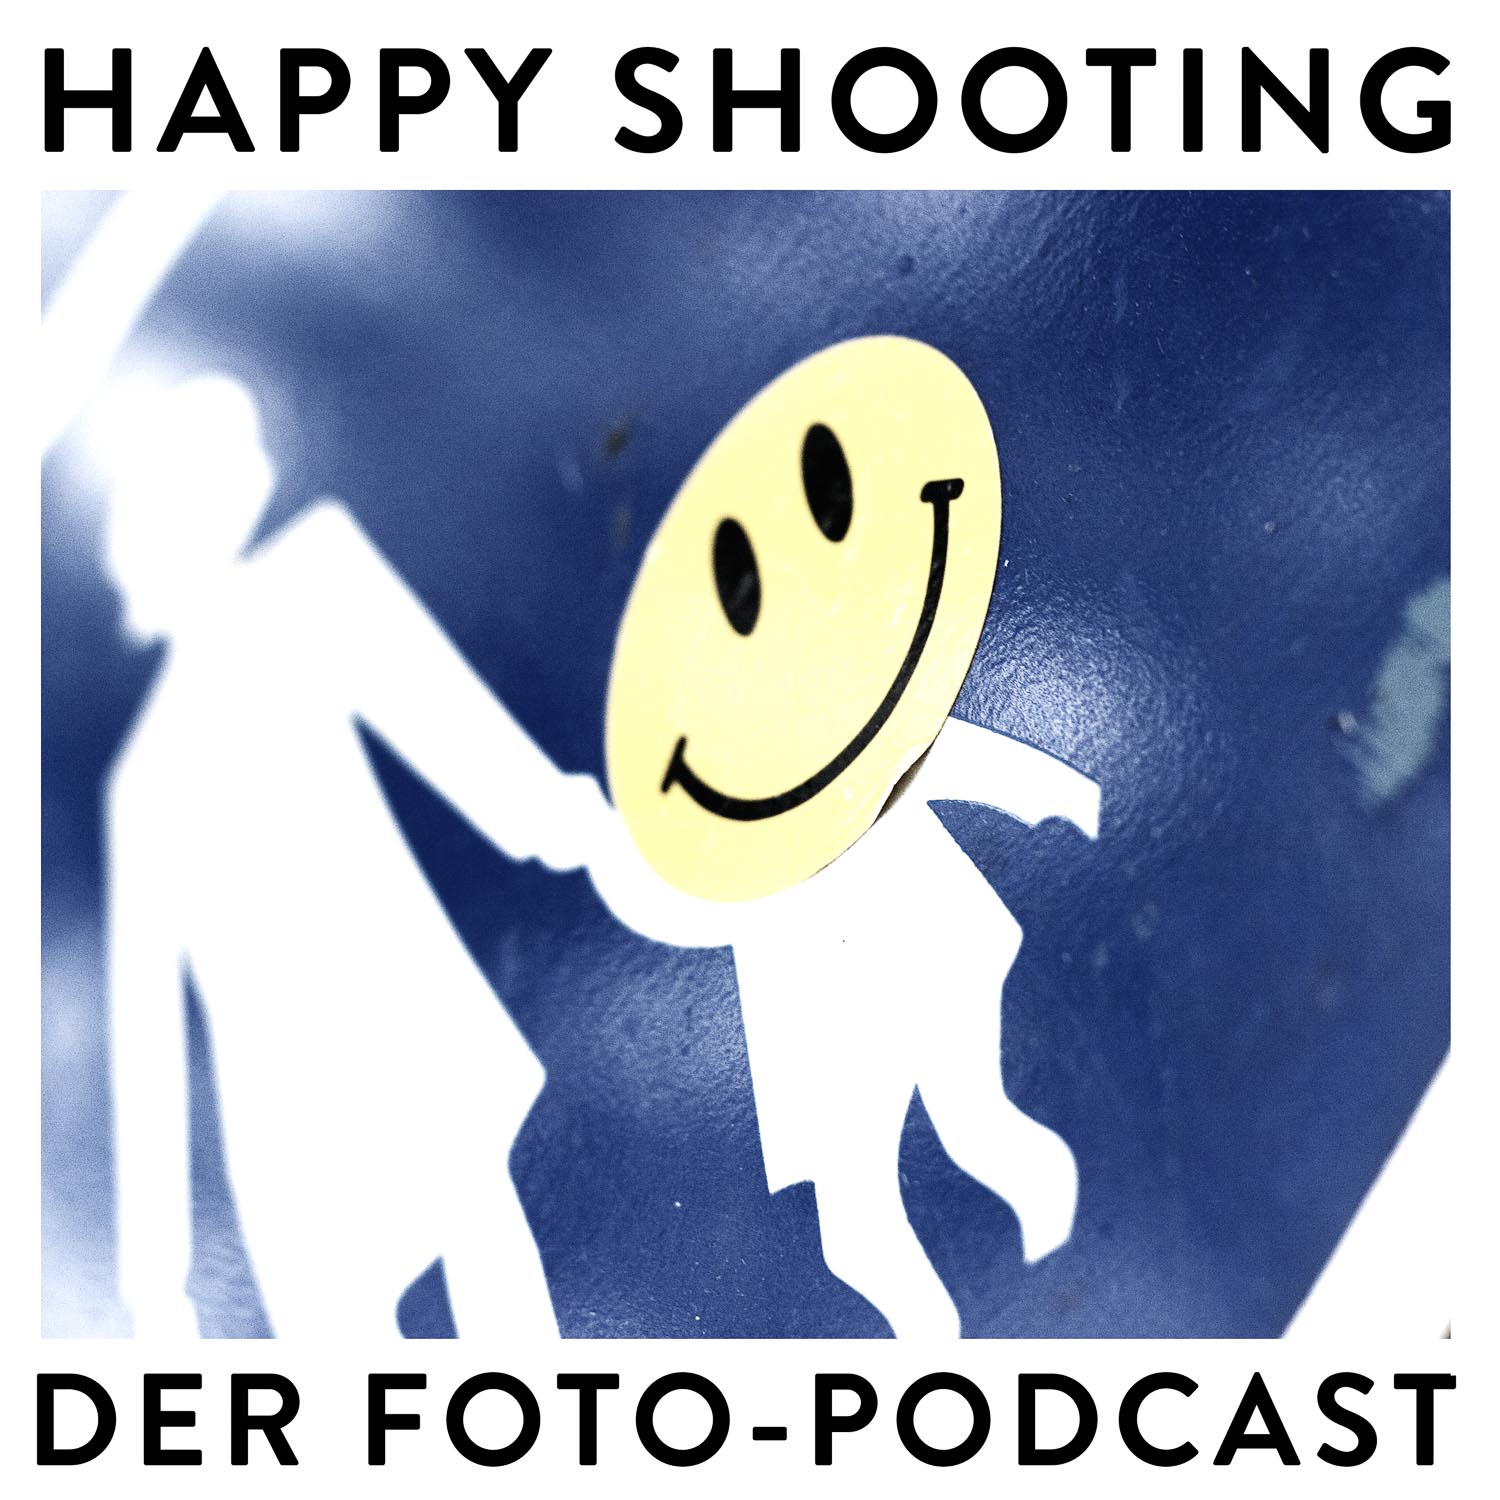 (c) Happyshooting.de